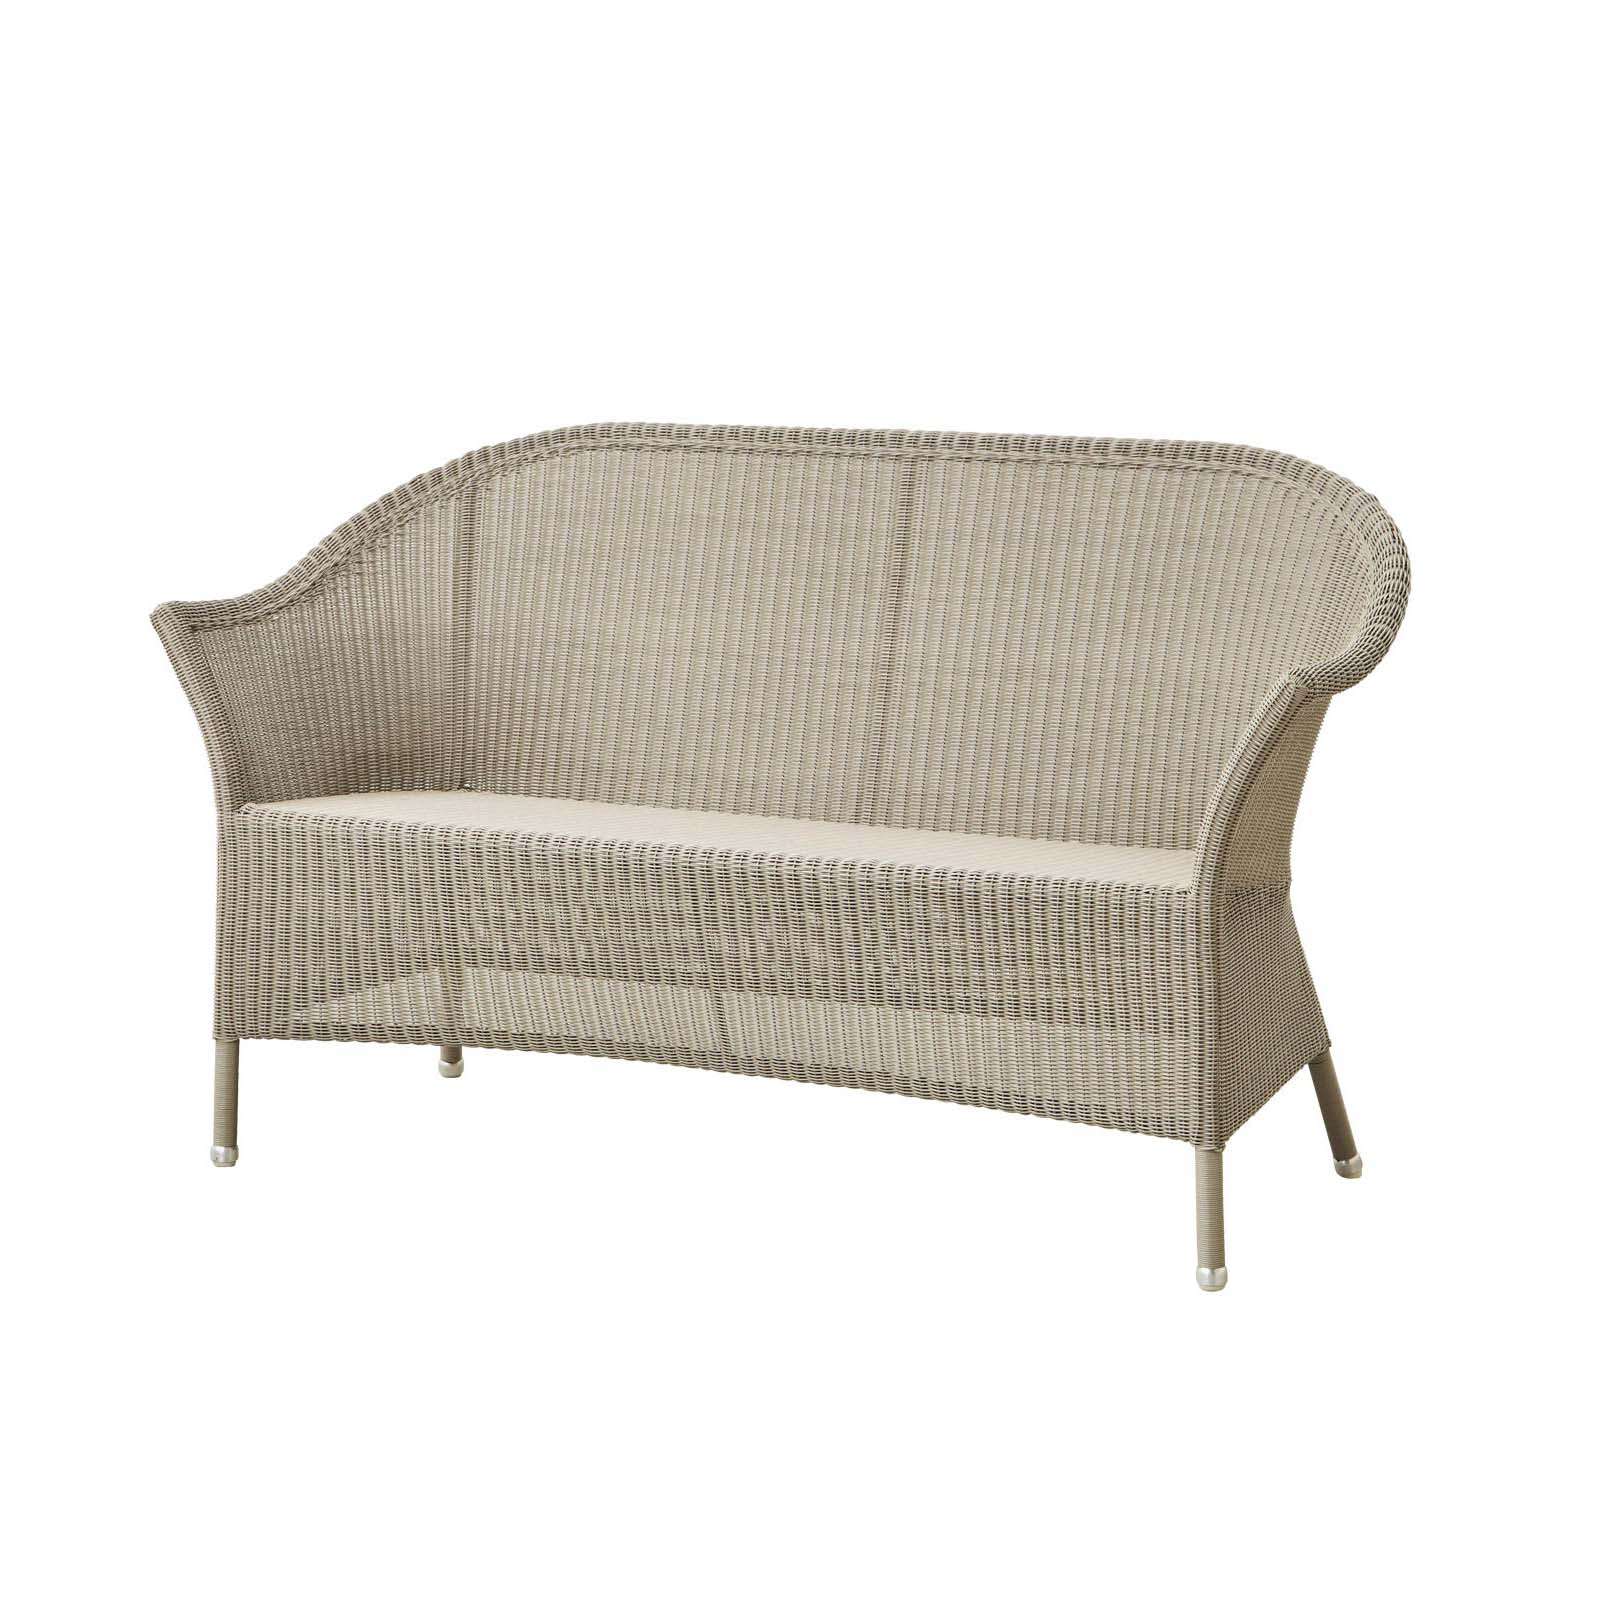 Lansing 2-Sitzer Sofa aus Cane-line Weave in Taupe mit Kissen aus Cane-line Natté in Grey